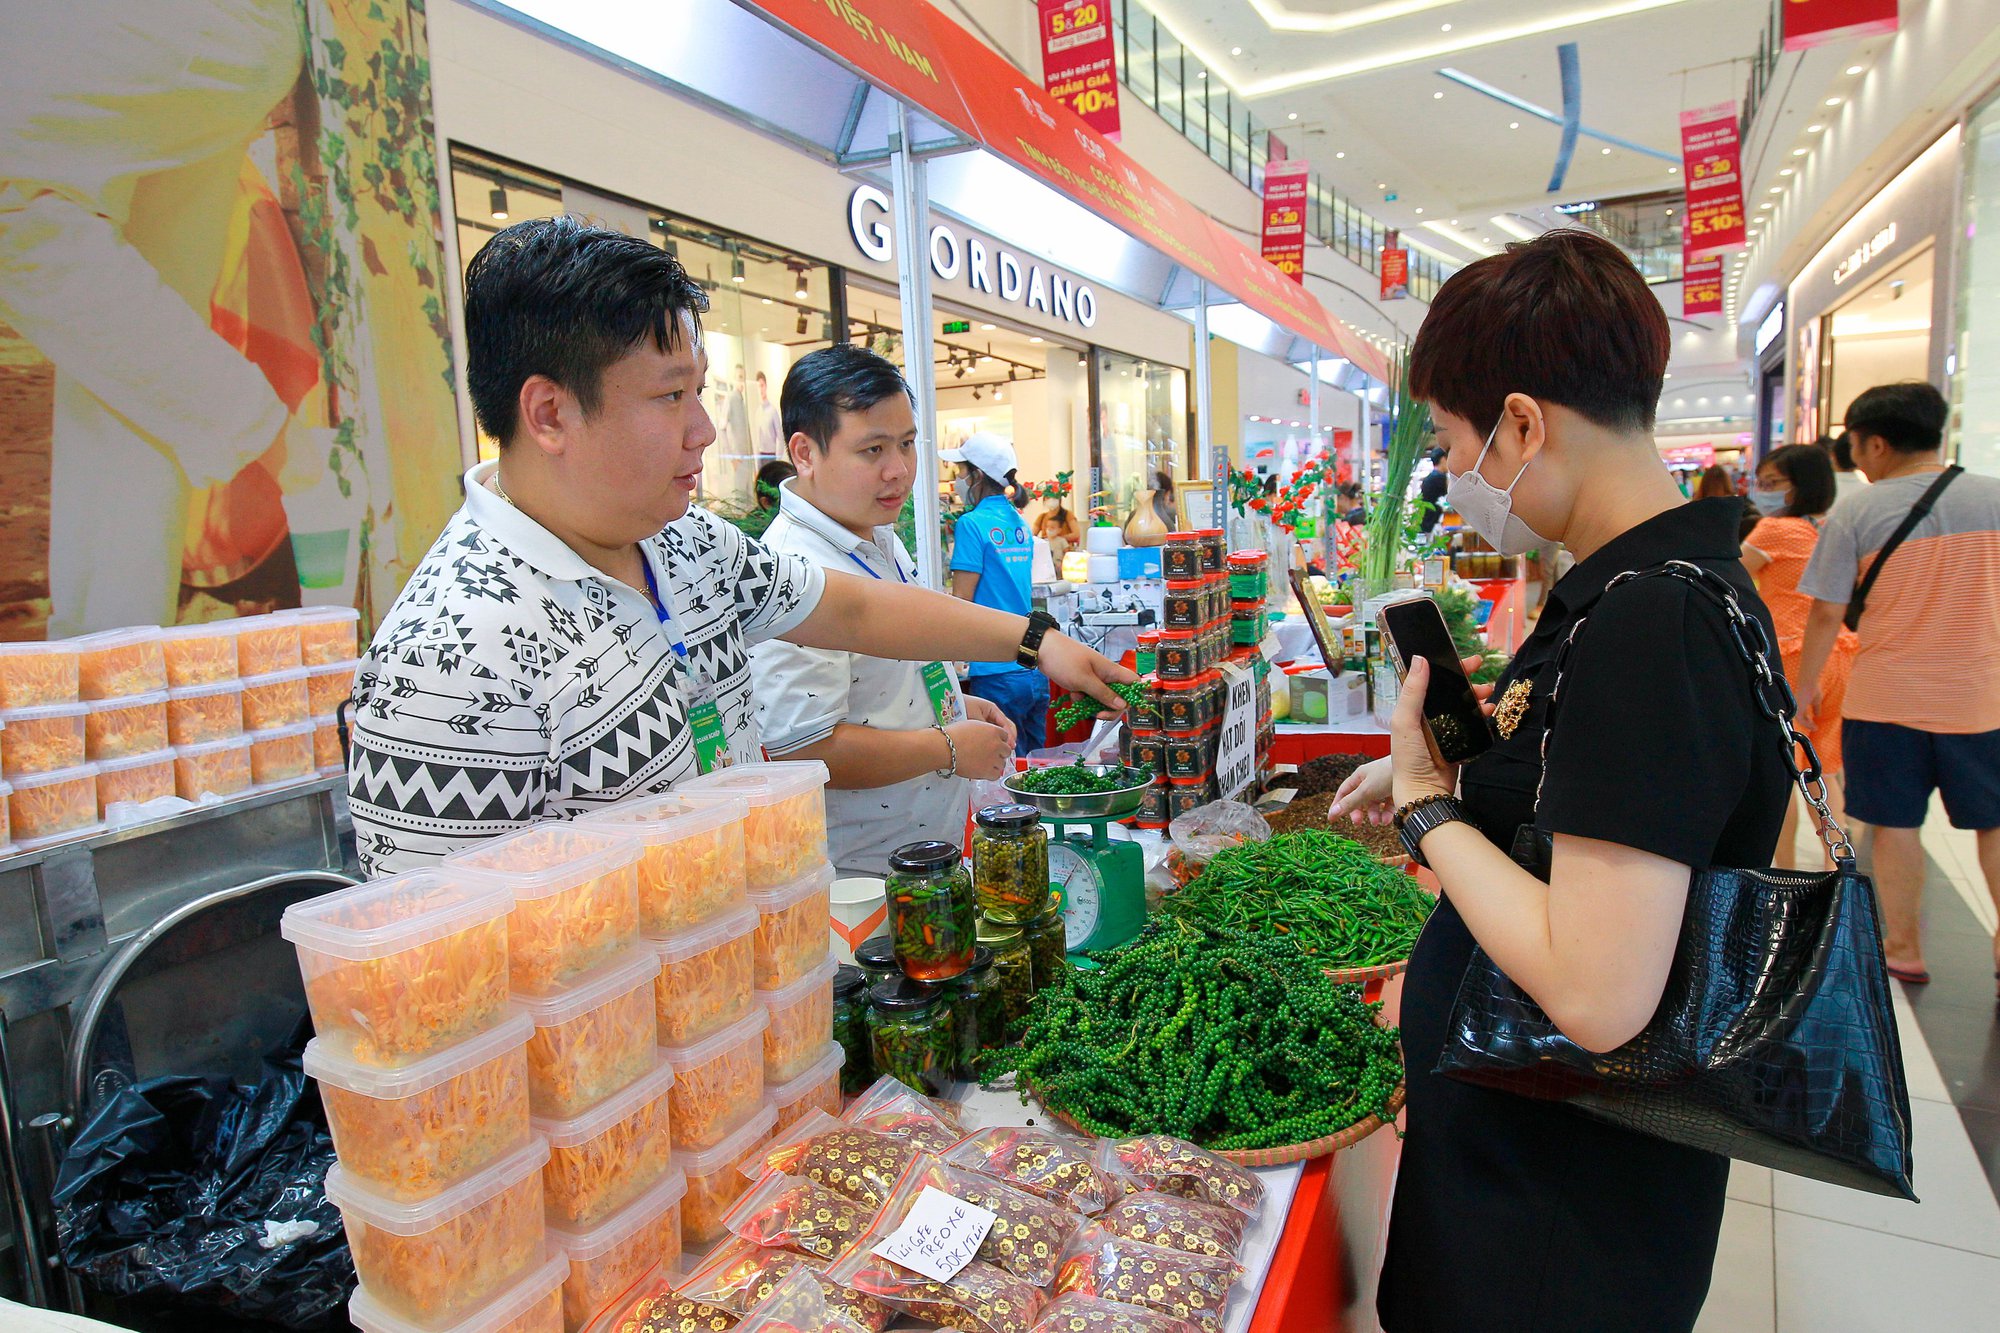 80 doanh nghiệp tham gia Hội chợ xúc tiến thương mại nông nghiệp, sản phẩm OCOP tại Hà Nội - Ảnh 2.